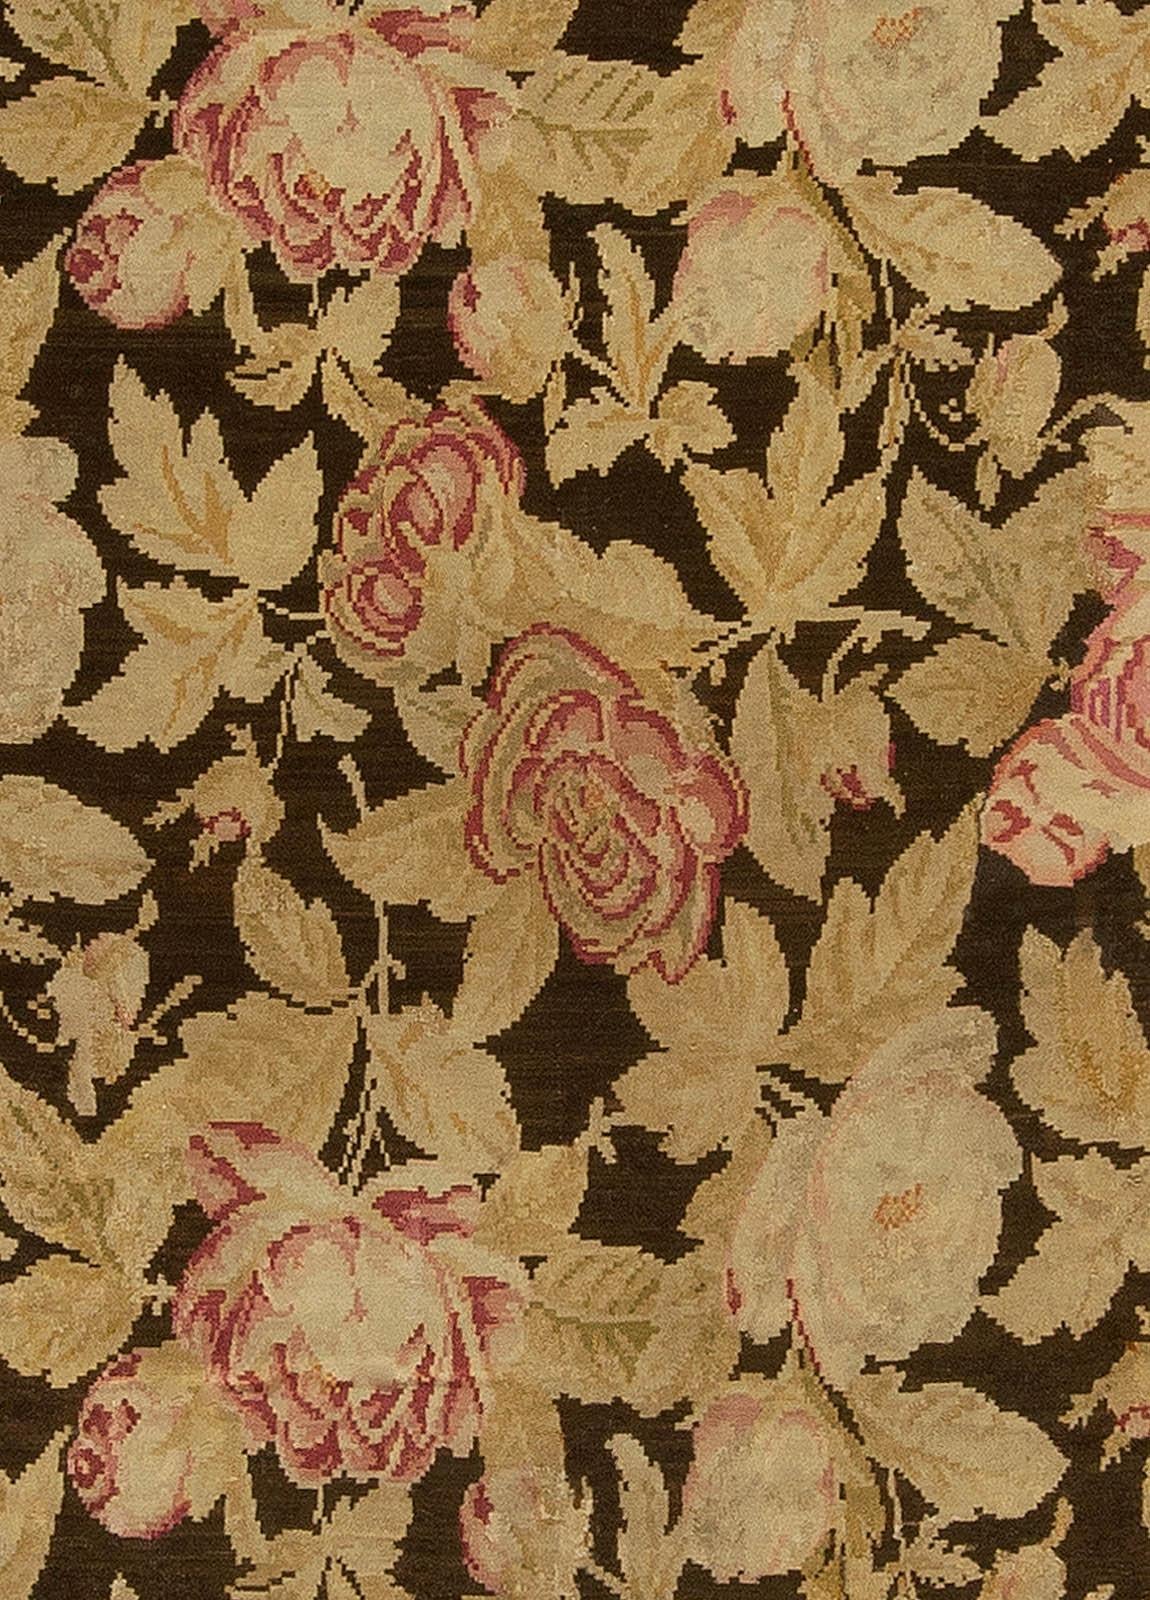 19th century Russian Bessarabian beige botanic handmade wool rug
Size: 11'4